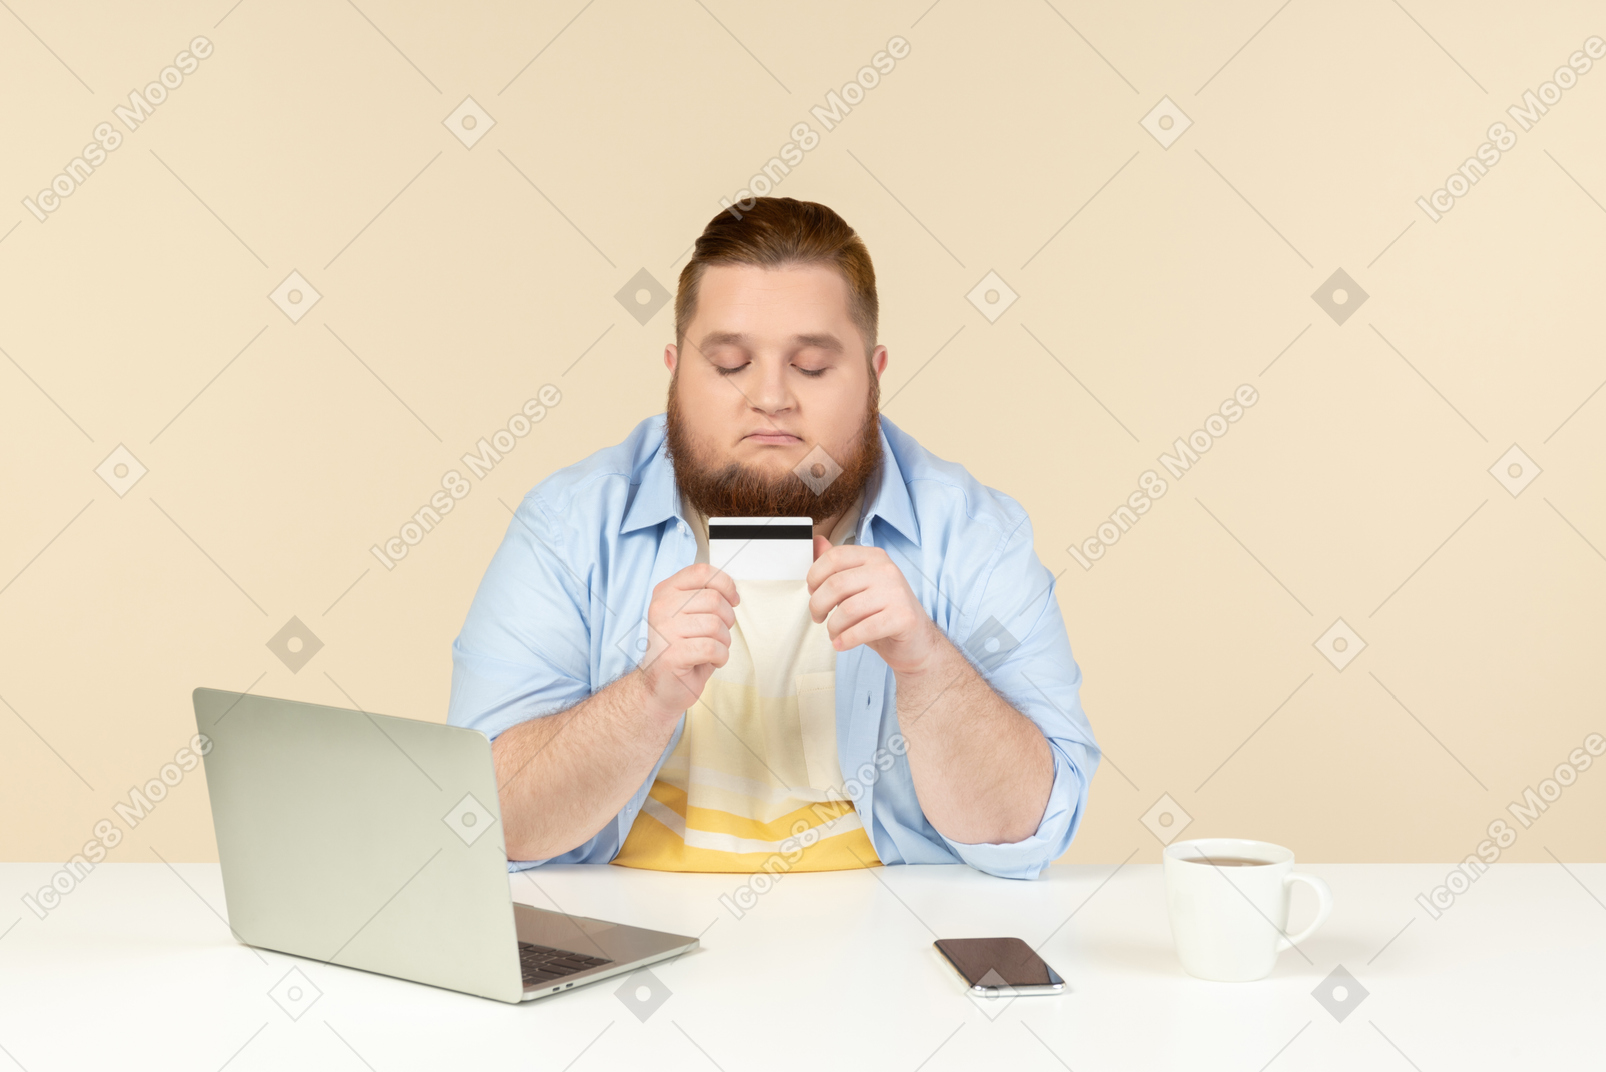 Молодой человек с избыточным весом сидит за столом и смотрит на банковскую карту